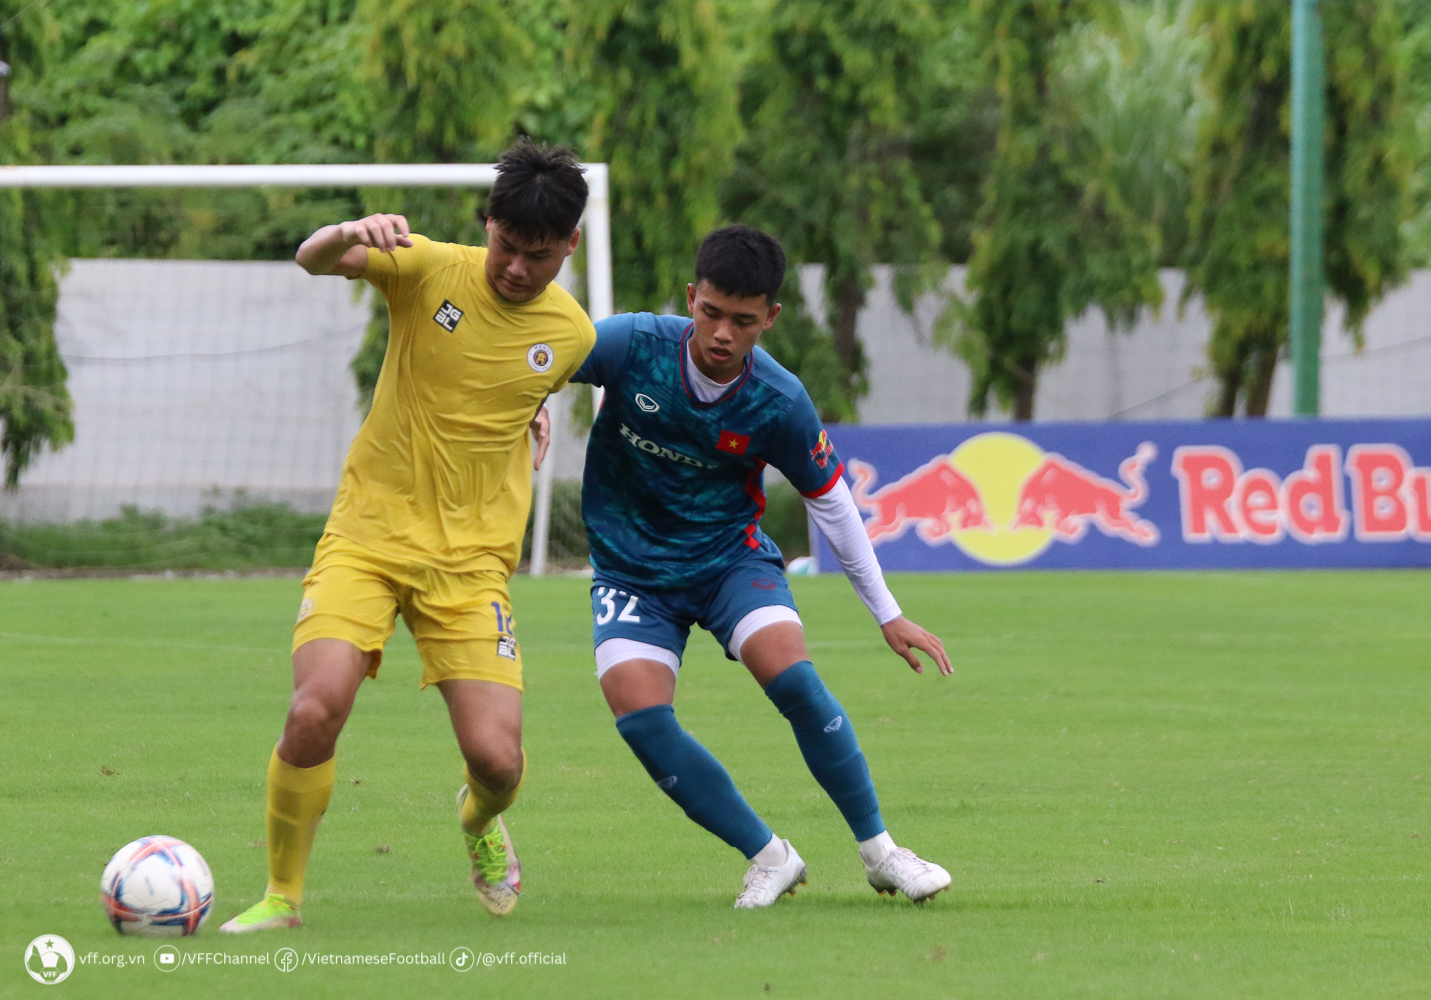 Theo kế hoạch, đội tuyển U23 Việt Nam sẽ có thêm trận đấu tập nữa với U21 Hà Nội vào chiều 10.8. 